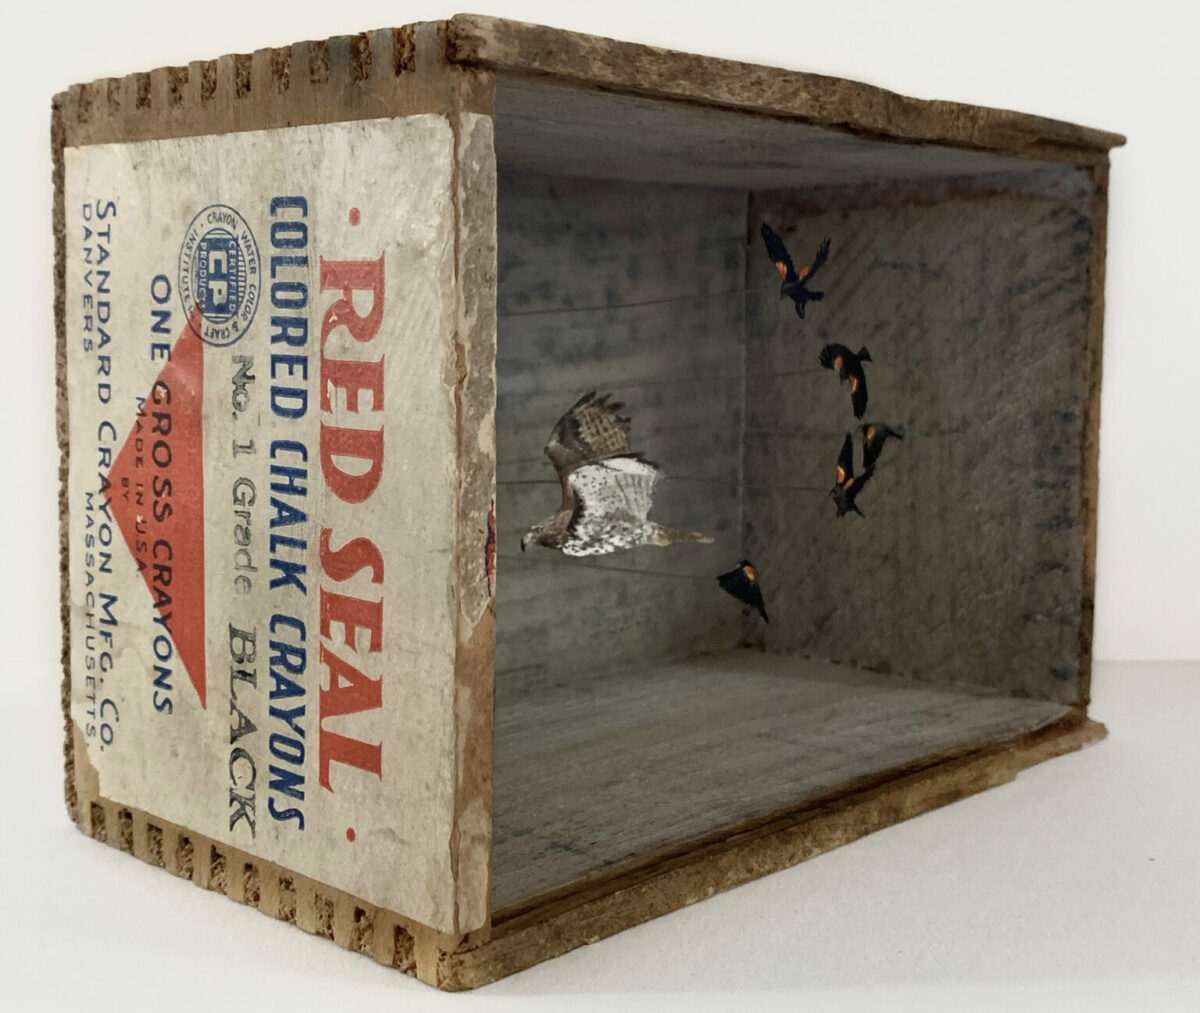 Box Dioramas Fabulous Mixed Media Artworks By Allison May Kiphuth 12